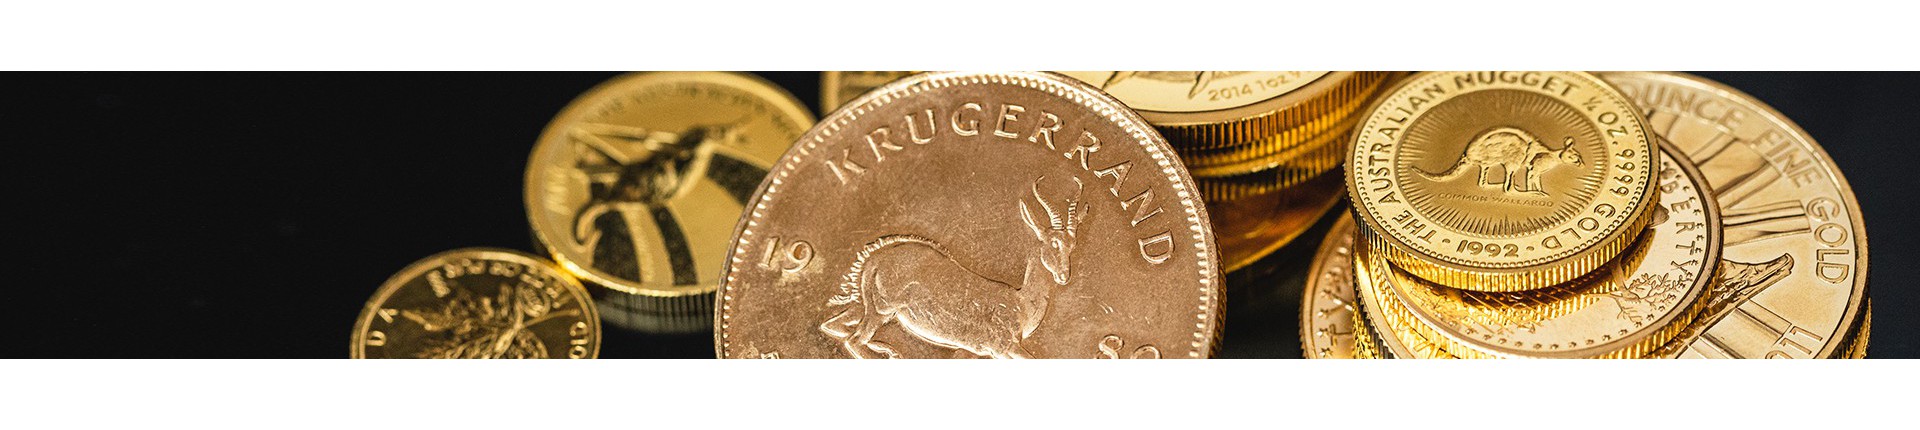 Gouden munten kopen? | Veilig & betrouwbaar | Goudwisselkantoor